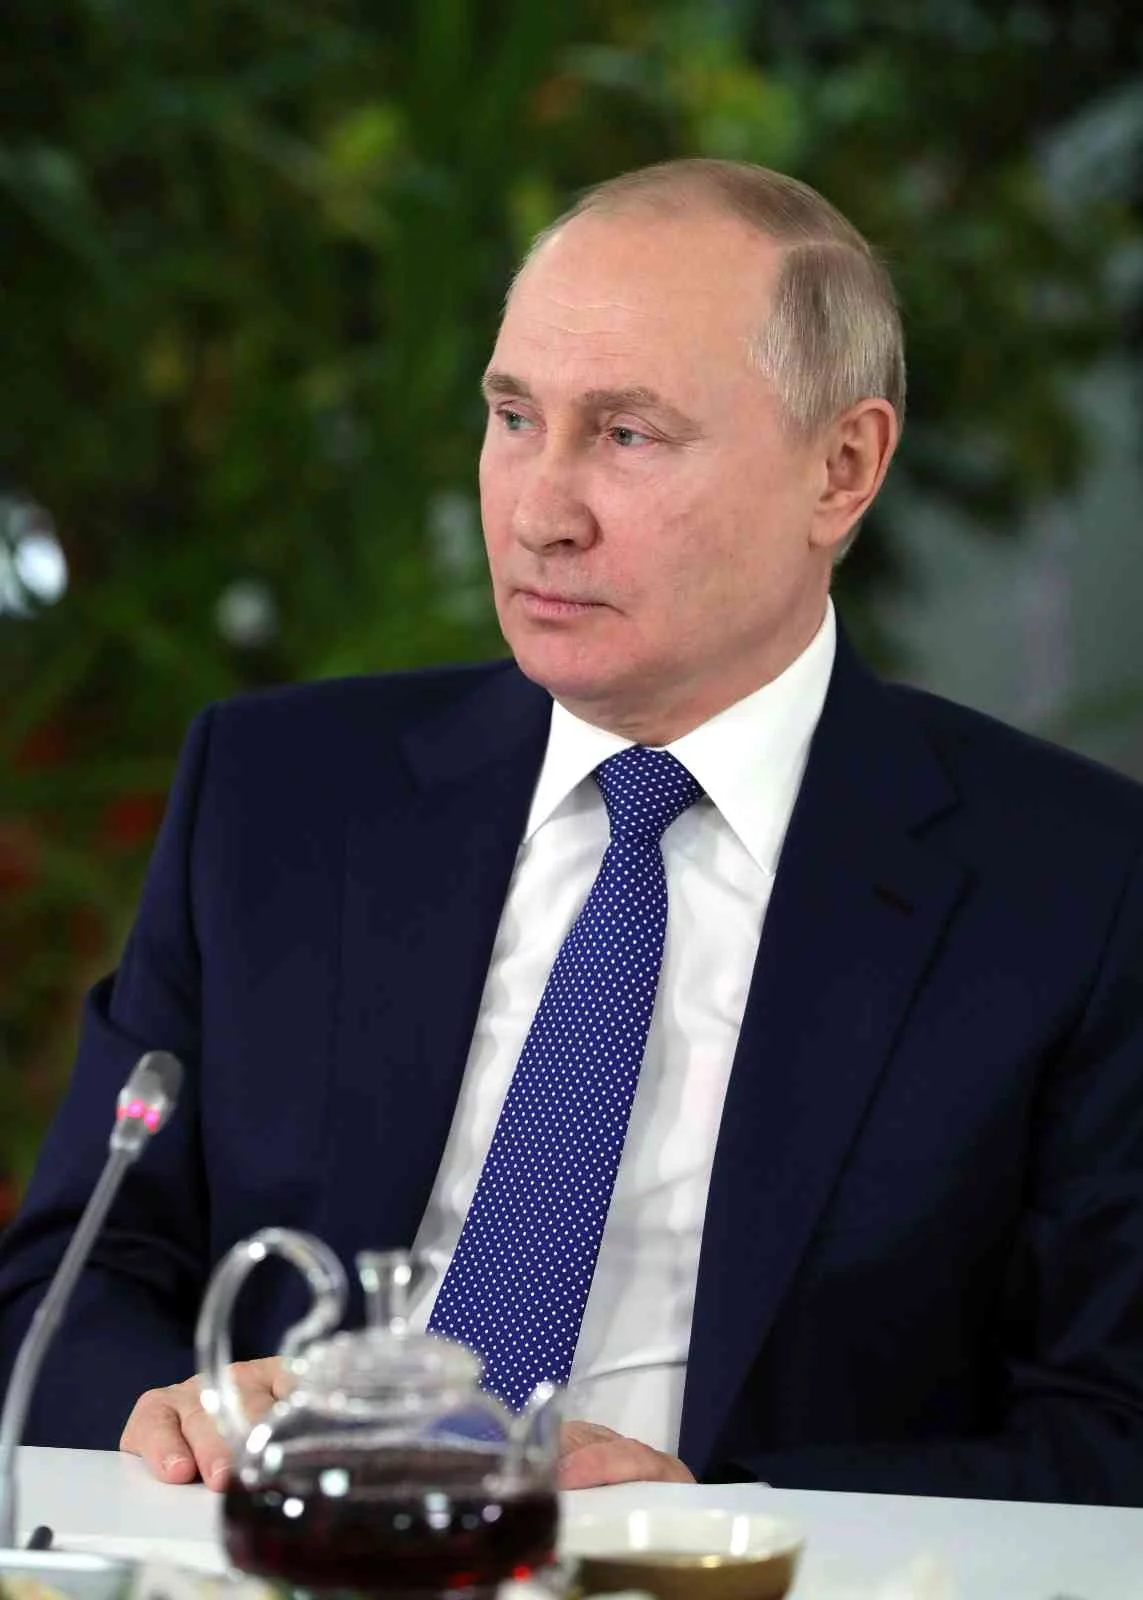 Putin: “Ukraynada alınacak uçuşa yasak bölge kararını savaş ilanı olarak görürüz”